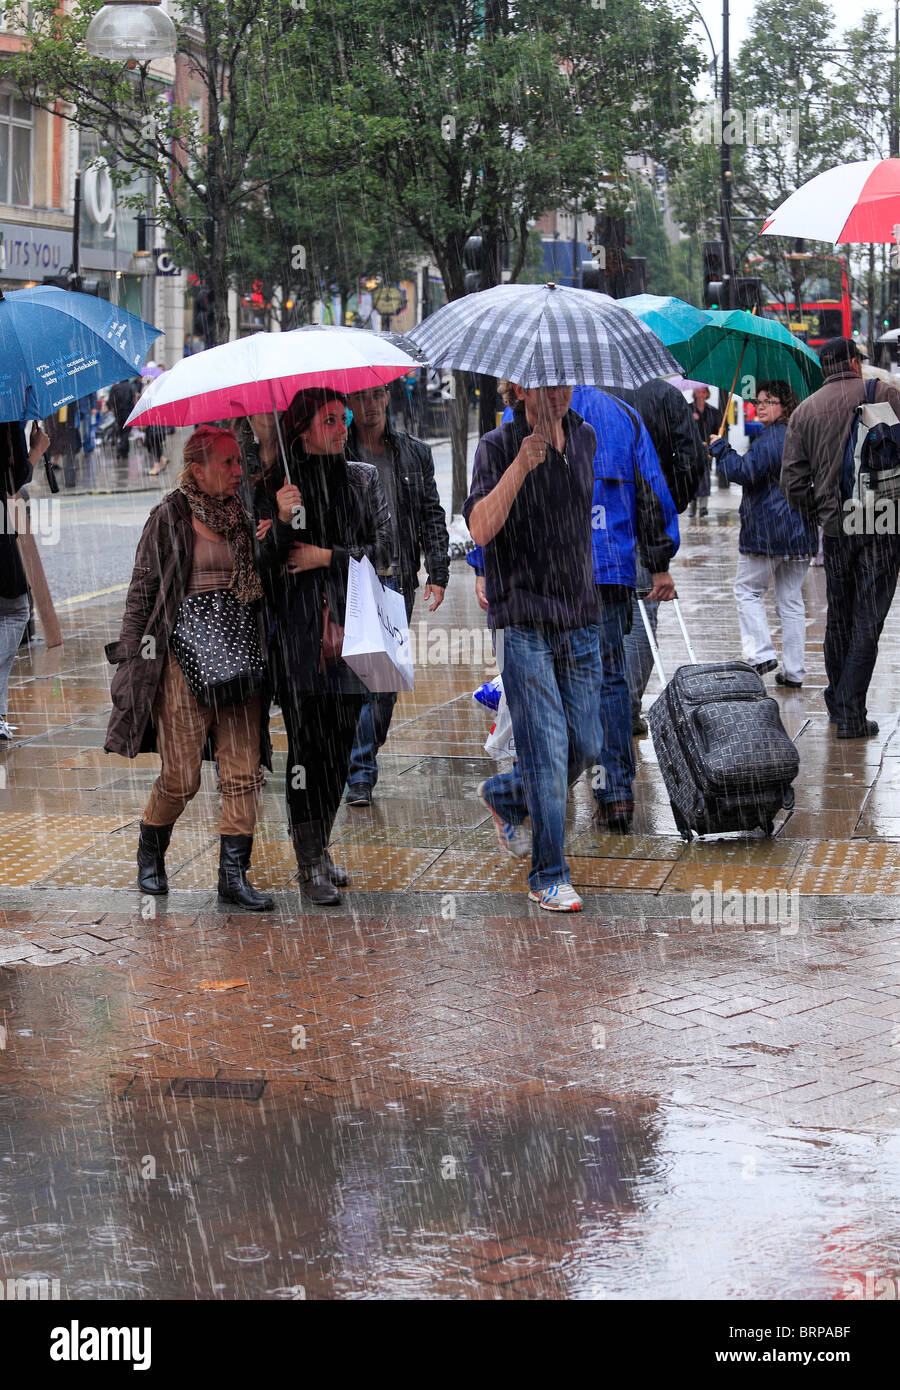 Los compradores de la calle en un día frío y lluvioso. Foto de stock